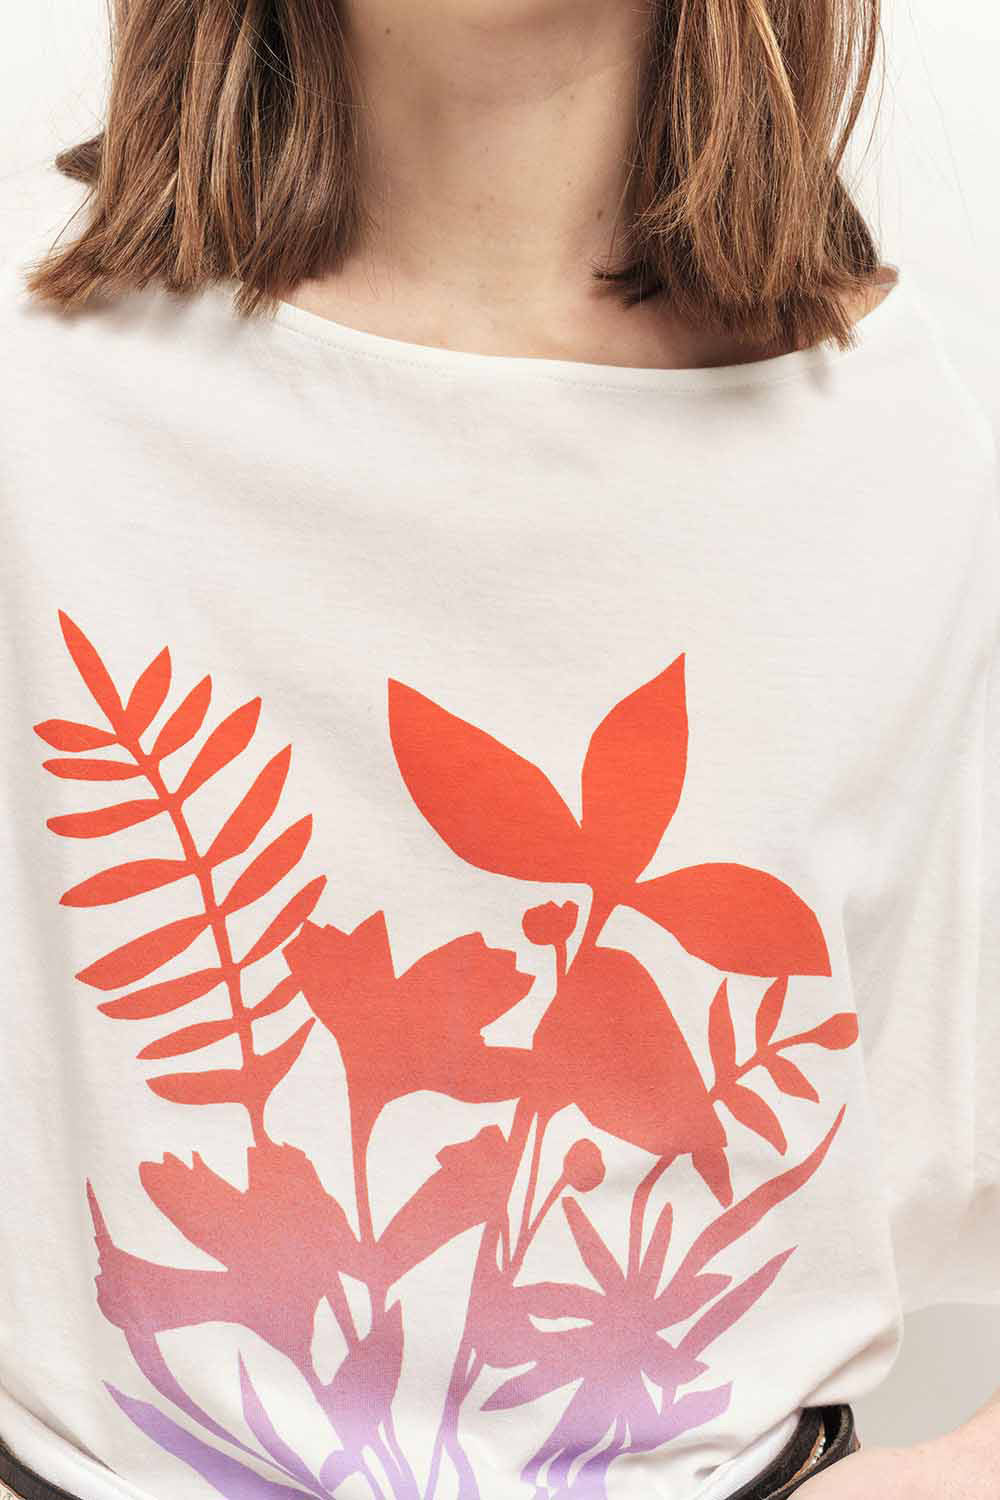 MARCO - T-shirt écru coton bio visuel feuillages effet deep dye